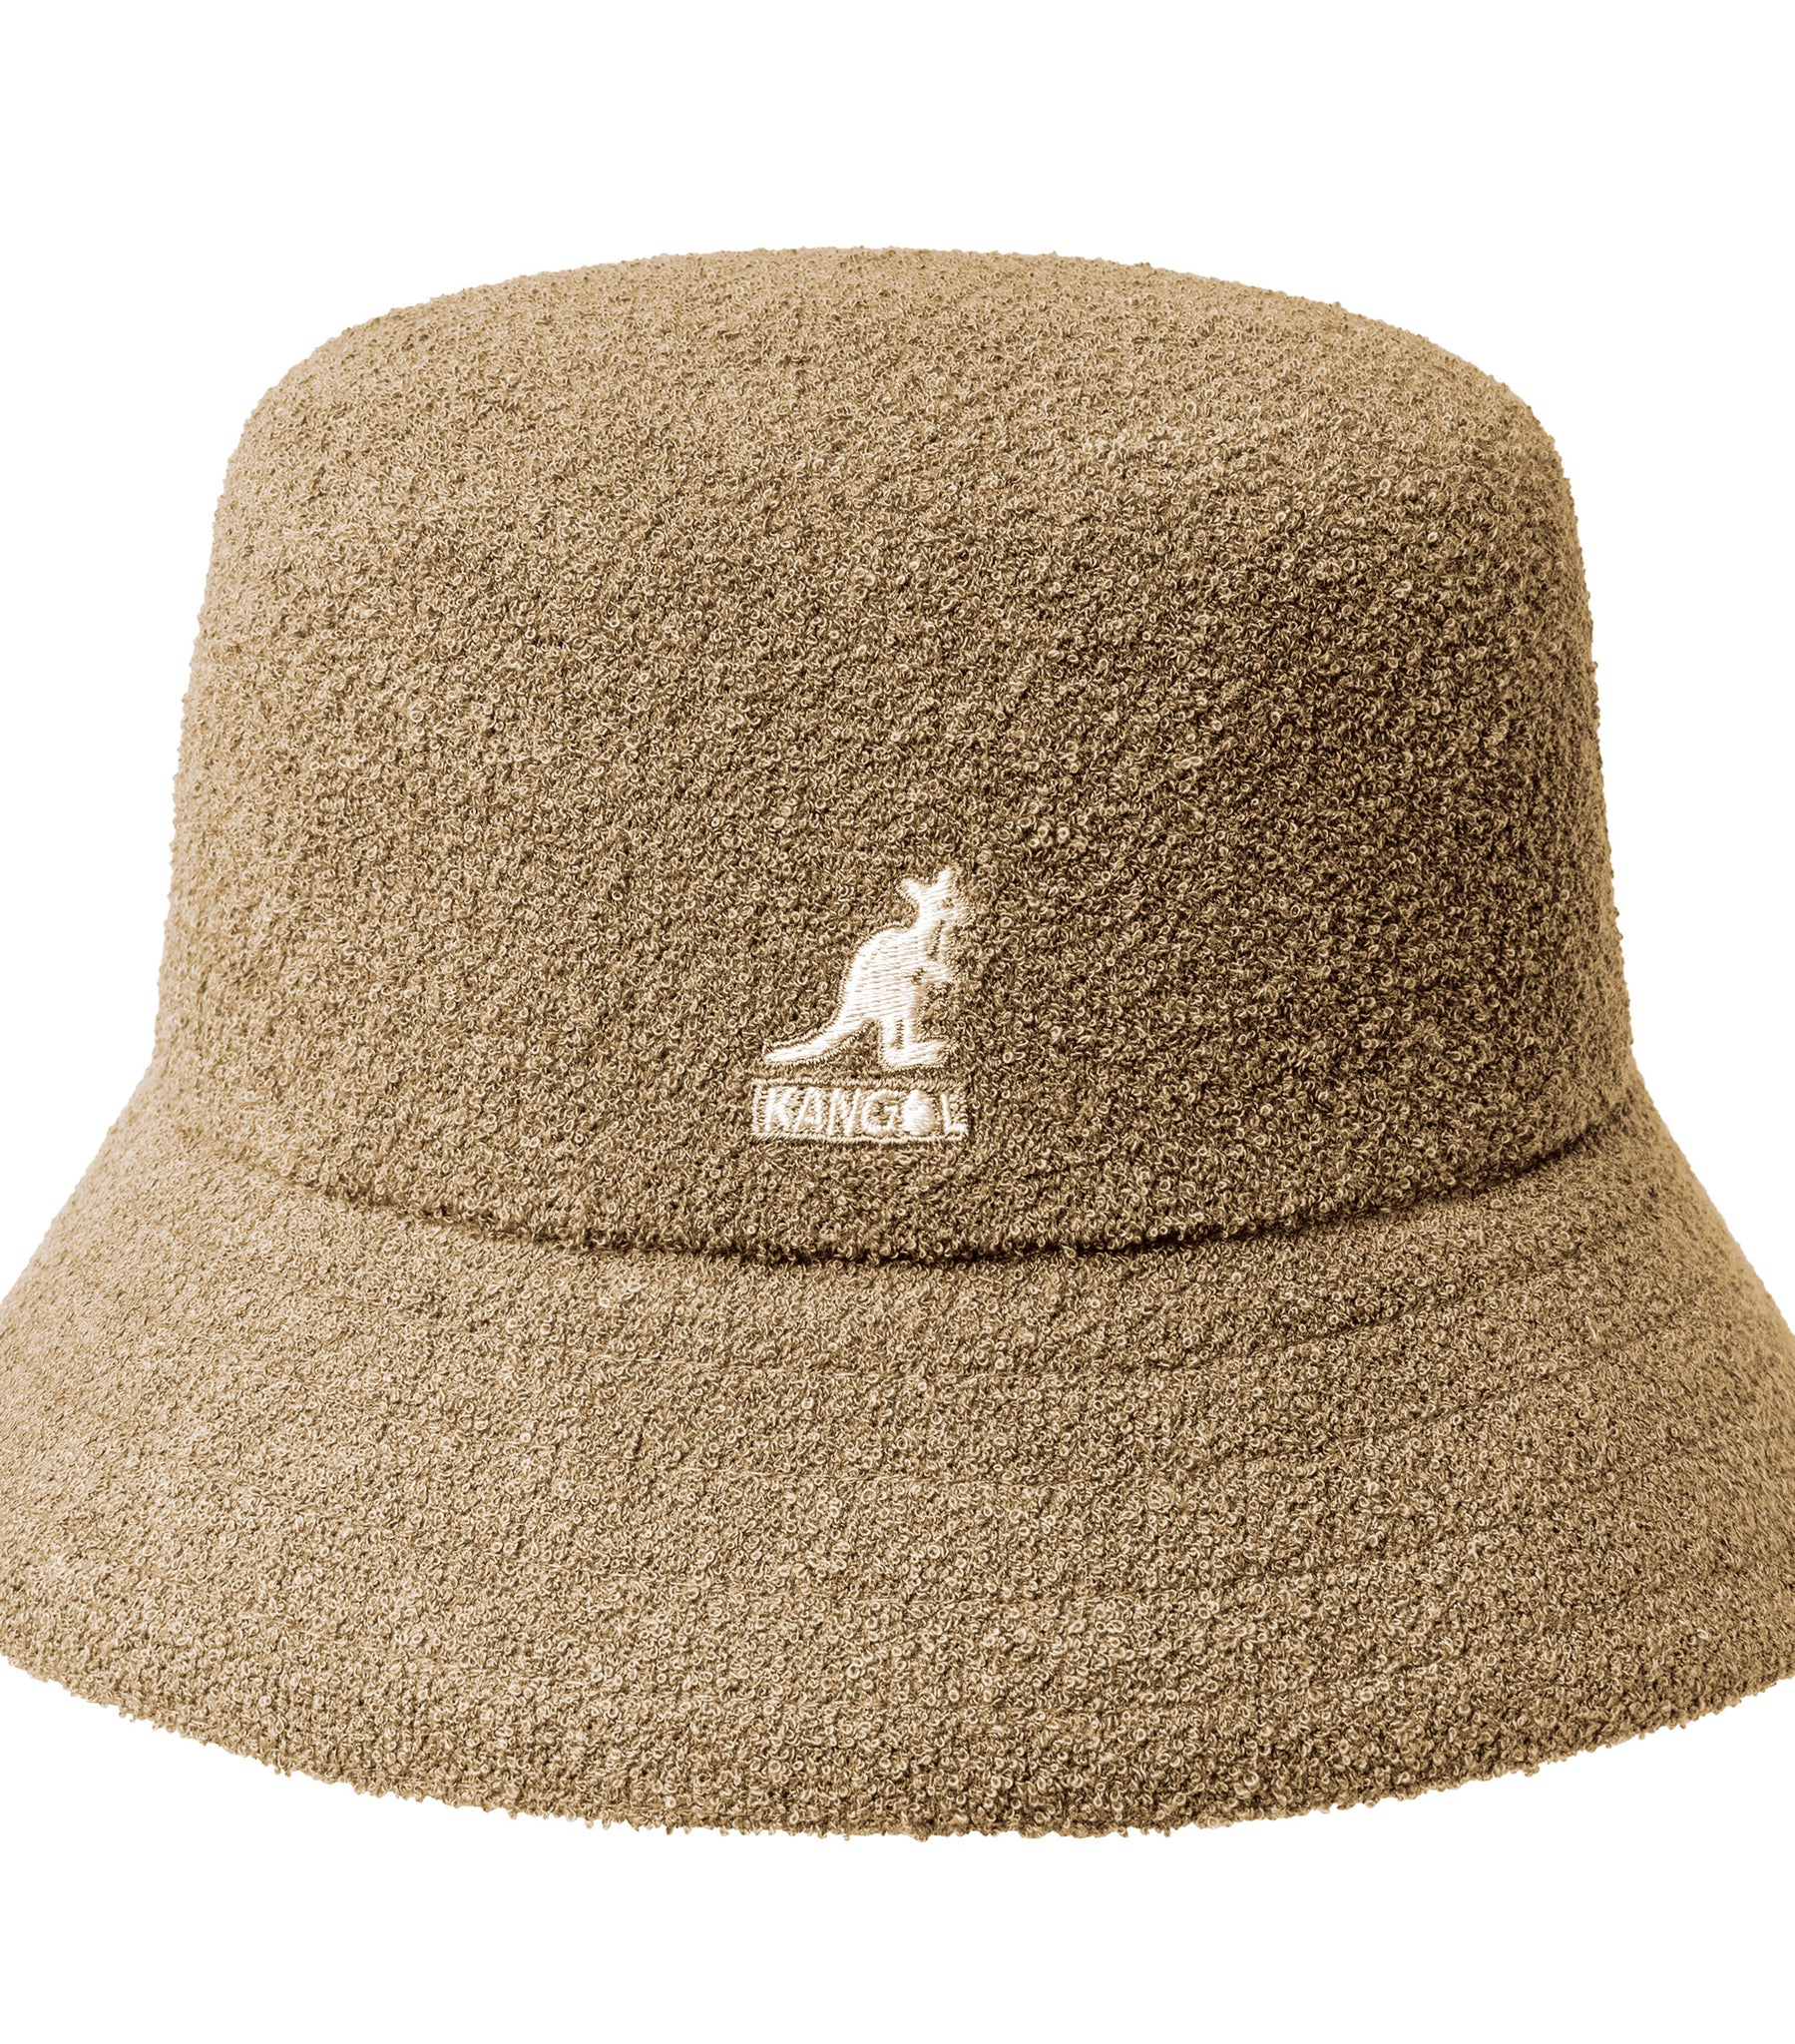 Kangol Bermuda Bucket Hat In Sponge Sand